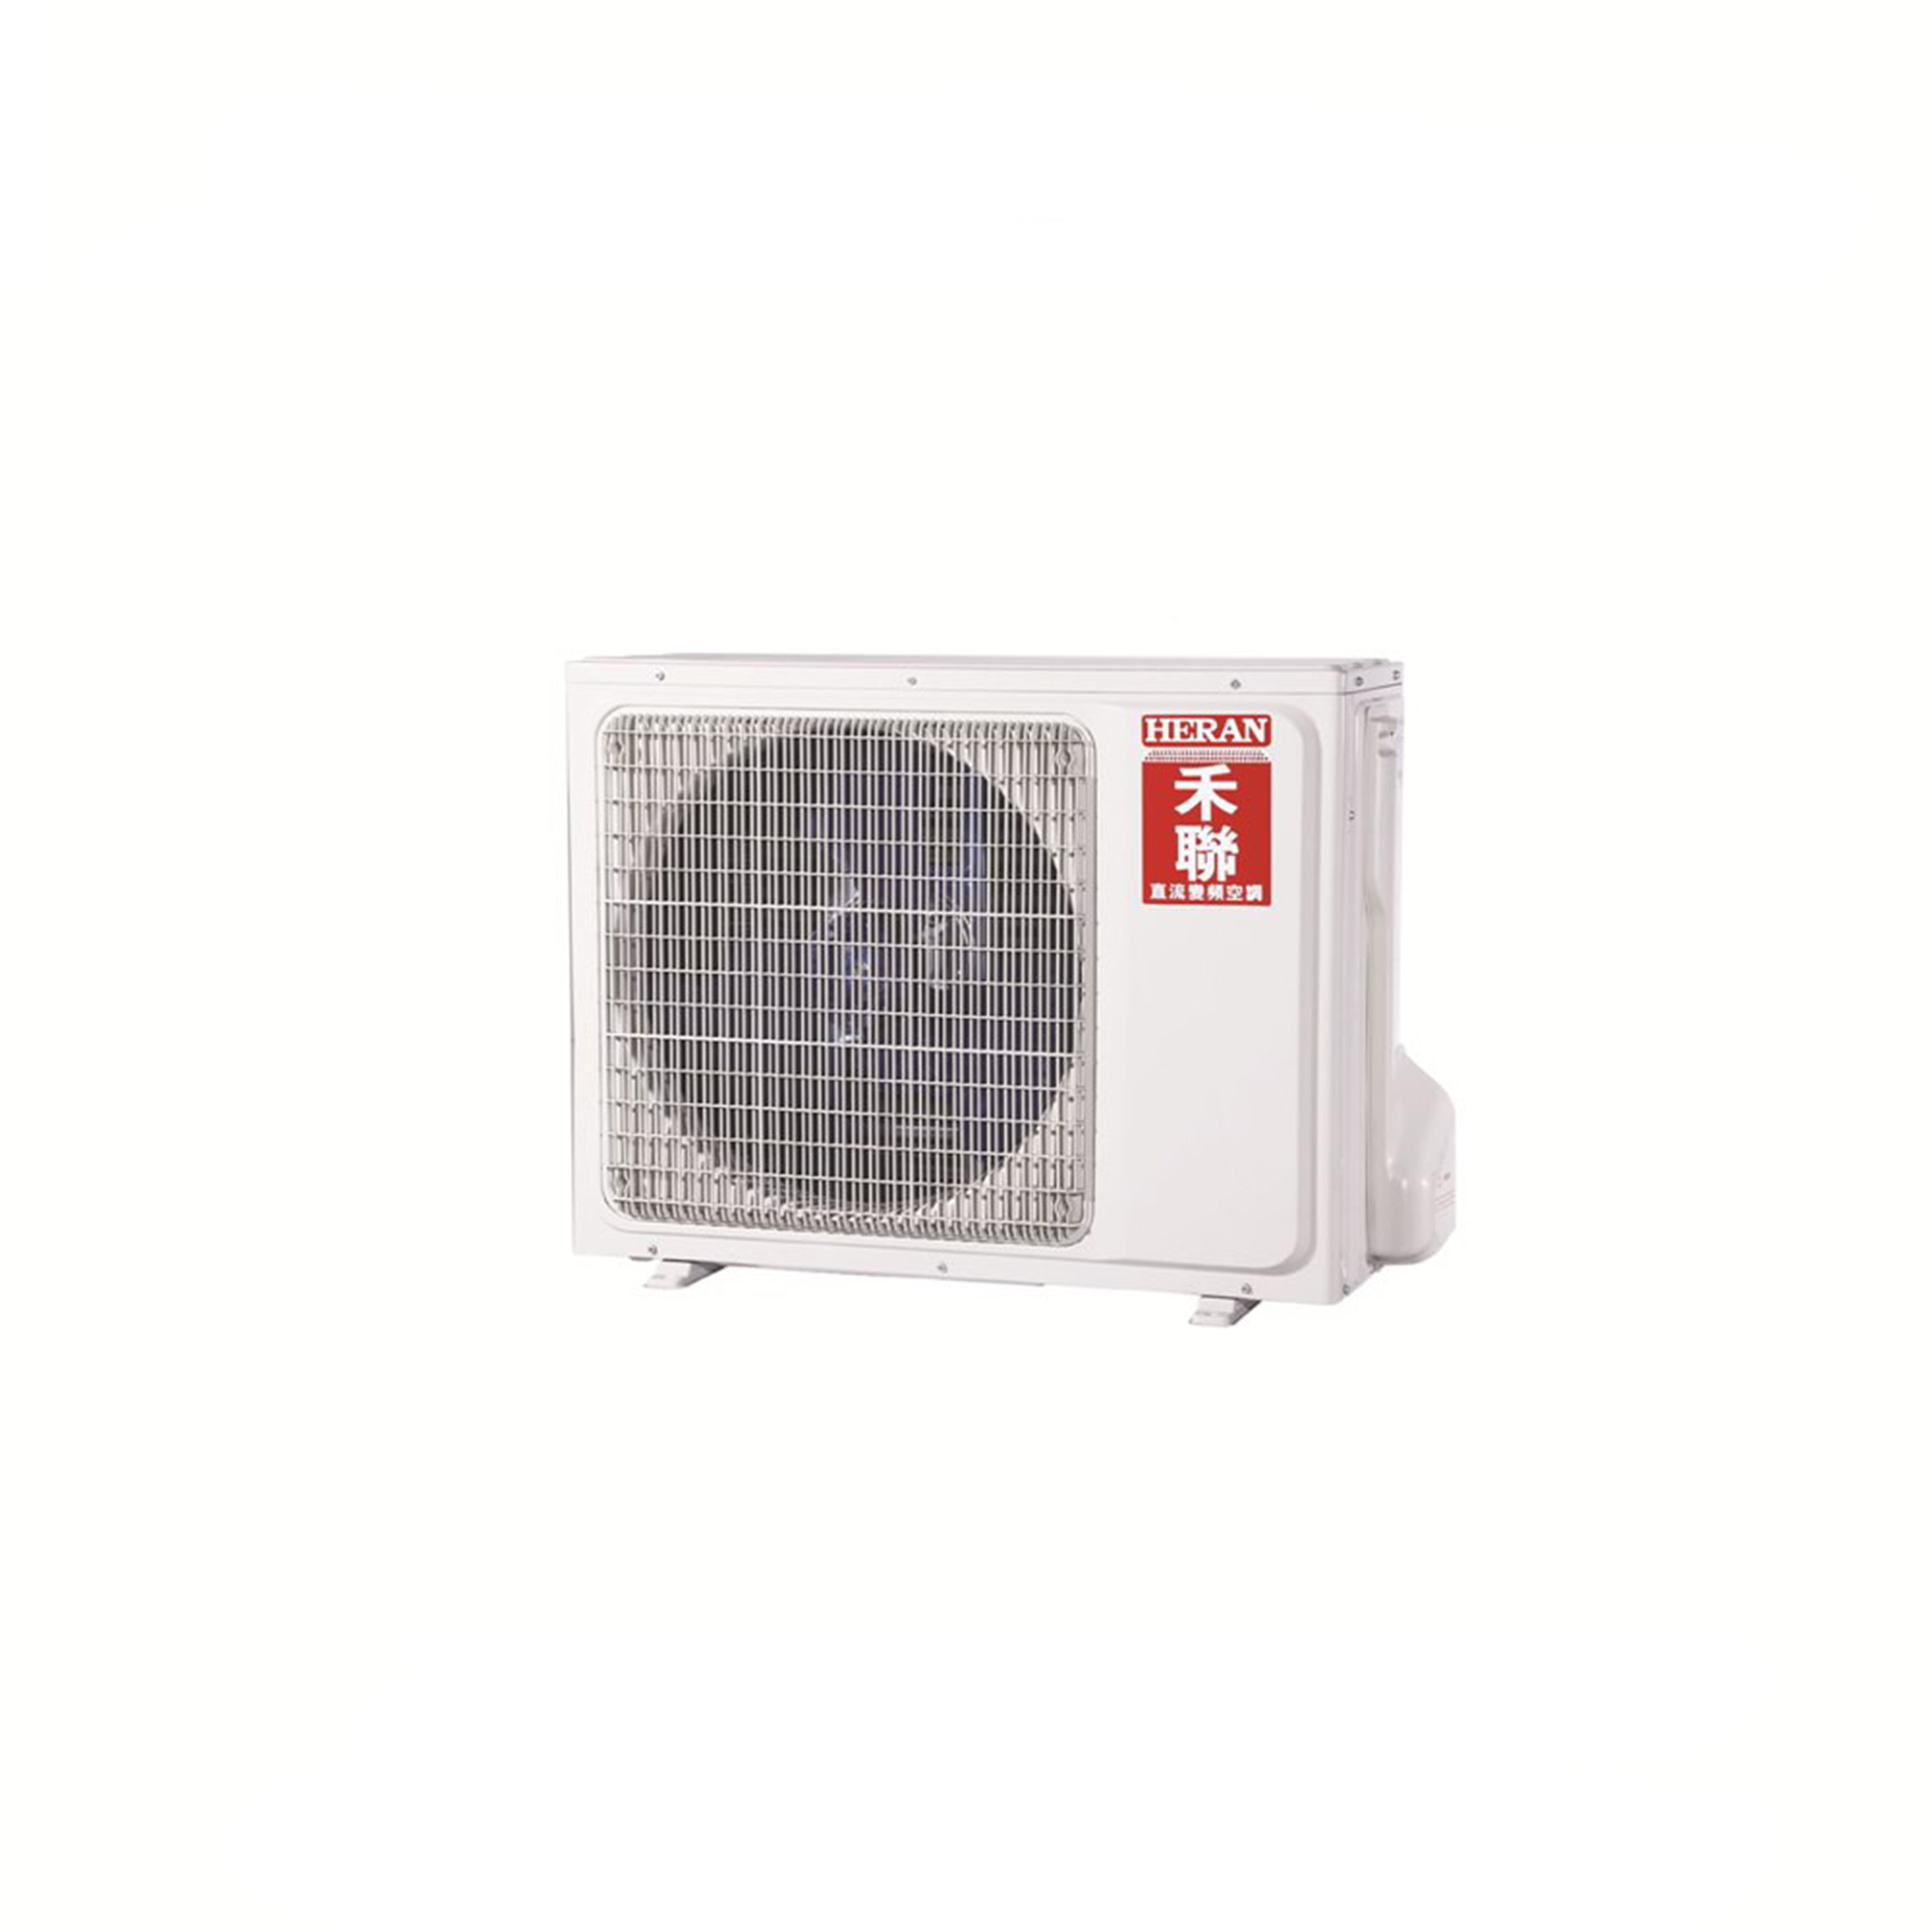 禾聯 HERAN 3-5坪 R32環保冷媒豪華型單冷變頻分離式冷氣 HI-GP28 HO-GP28 免卡分期